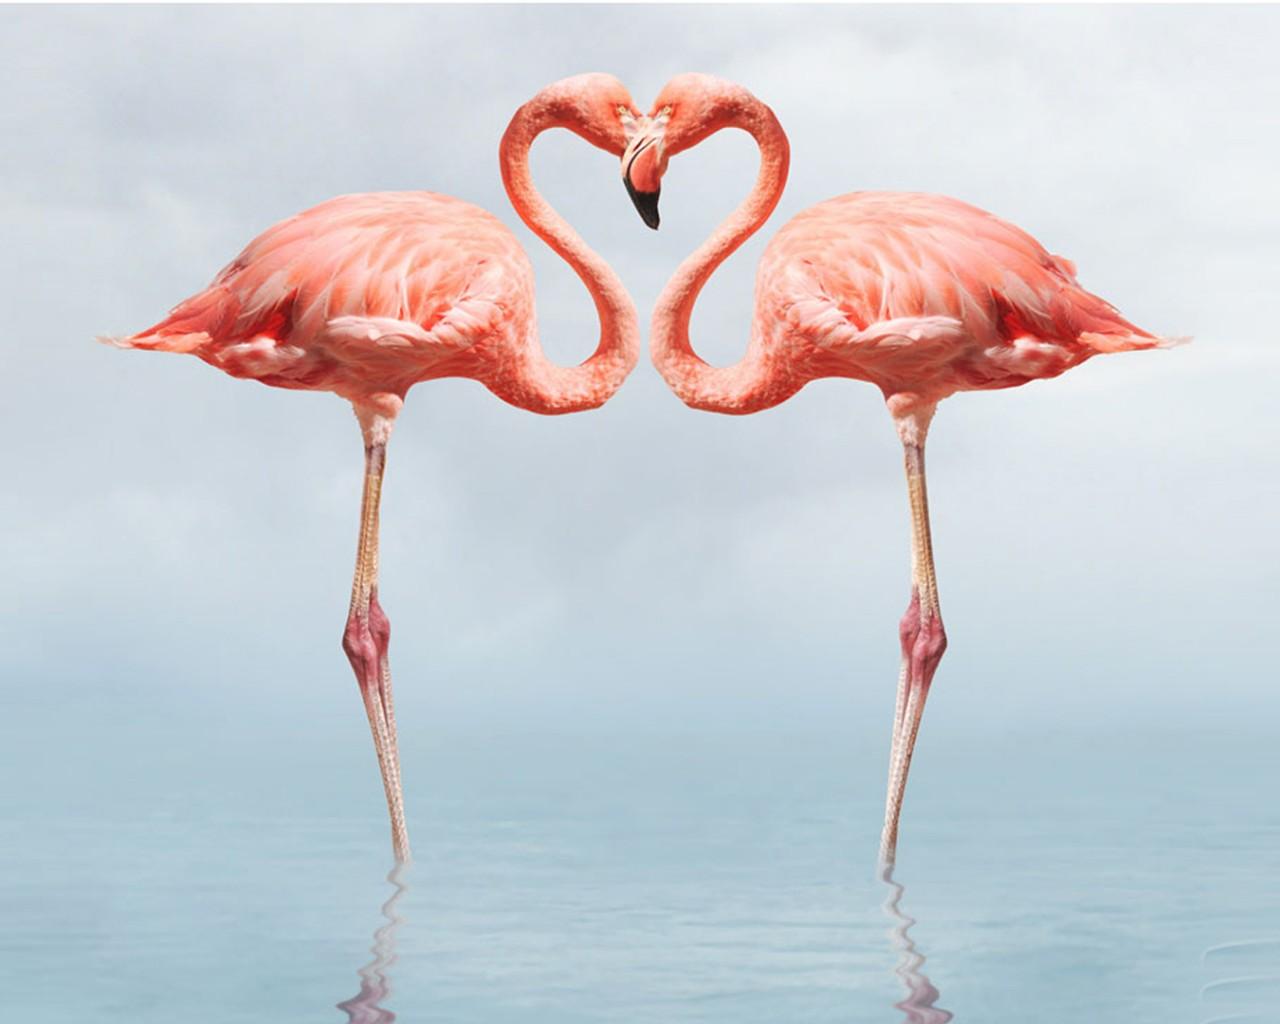 Flamingo Full HD Wallpaper 1080p, Wallpaper13.com